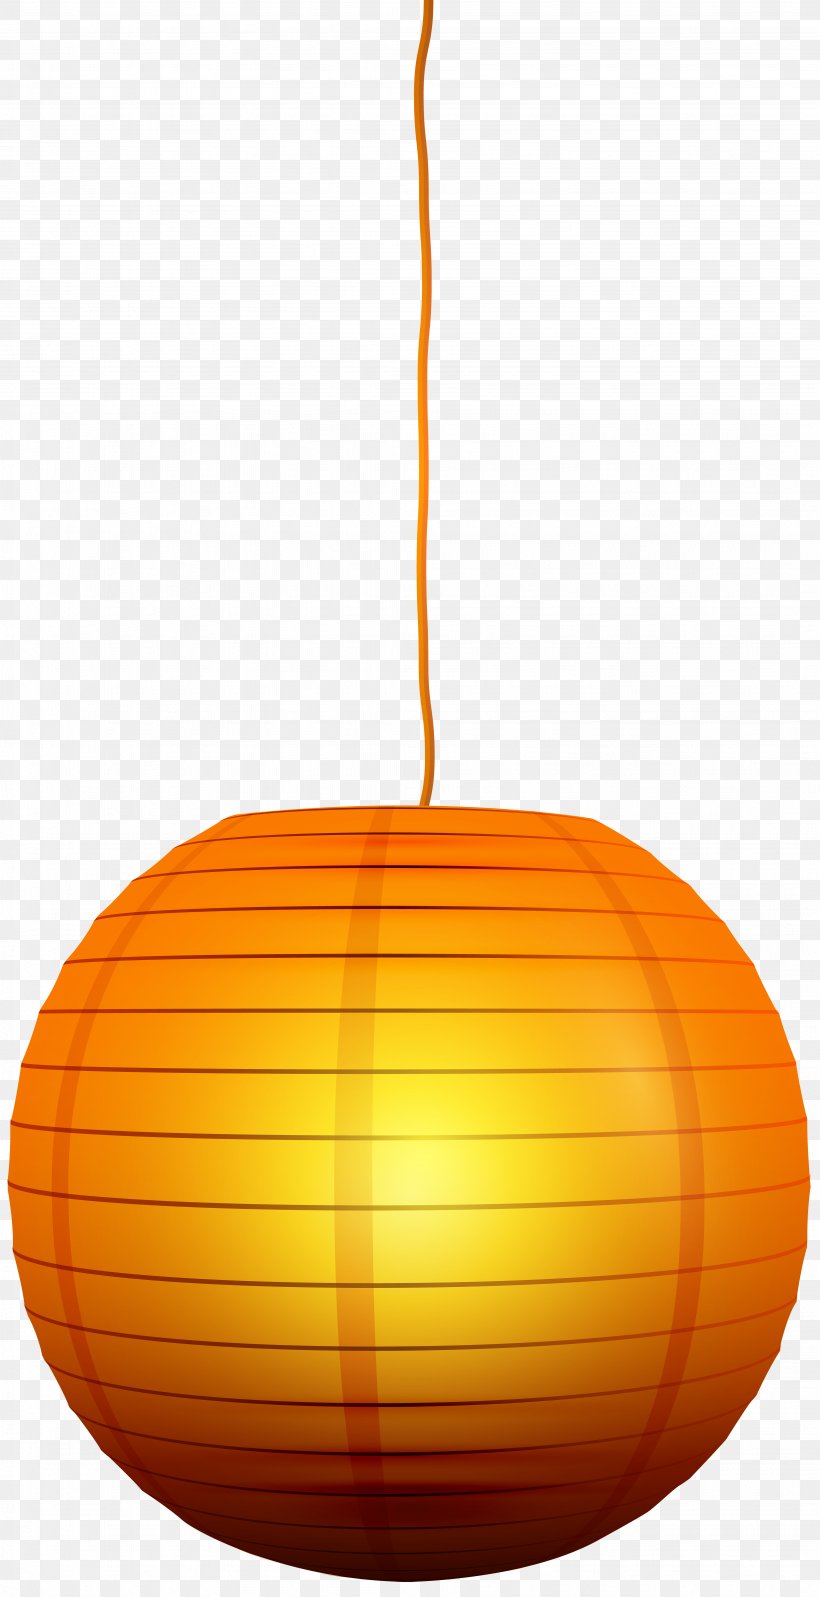 Calabaza Orange Pumpkin Pattern, PNG, 4107x8000px, Calabaza, Fruit, Orange, Pattern, Produce Download Free